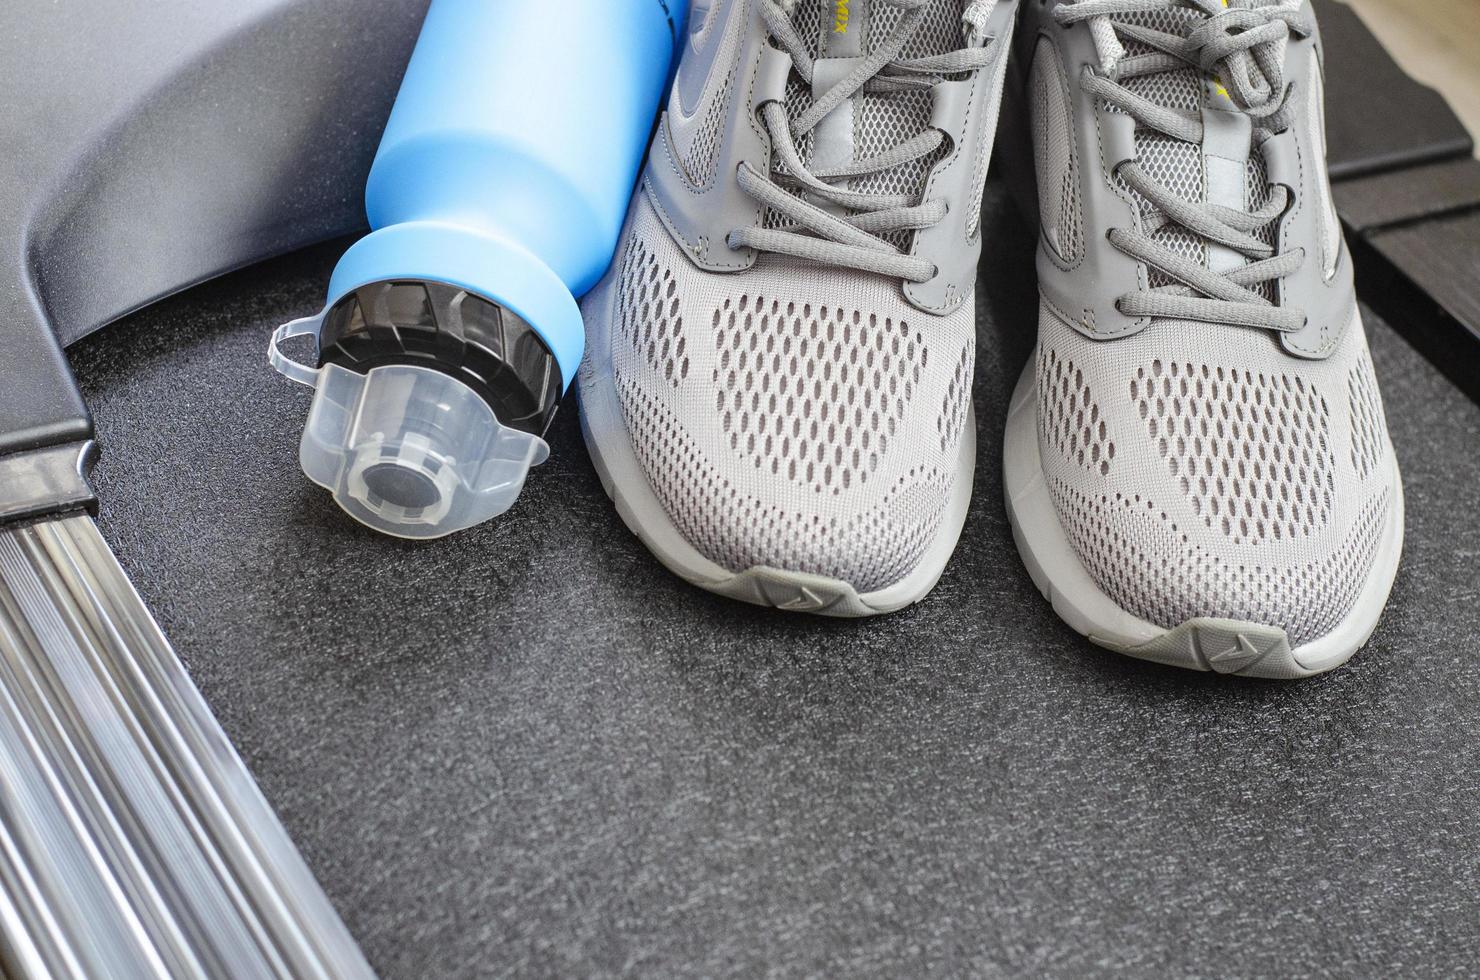 löparbana med sneakers och flaska vatten på svart bakgrund. träningsredskap för hälsan. studiofoto foto